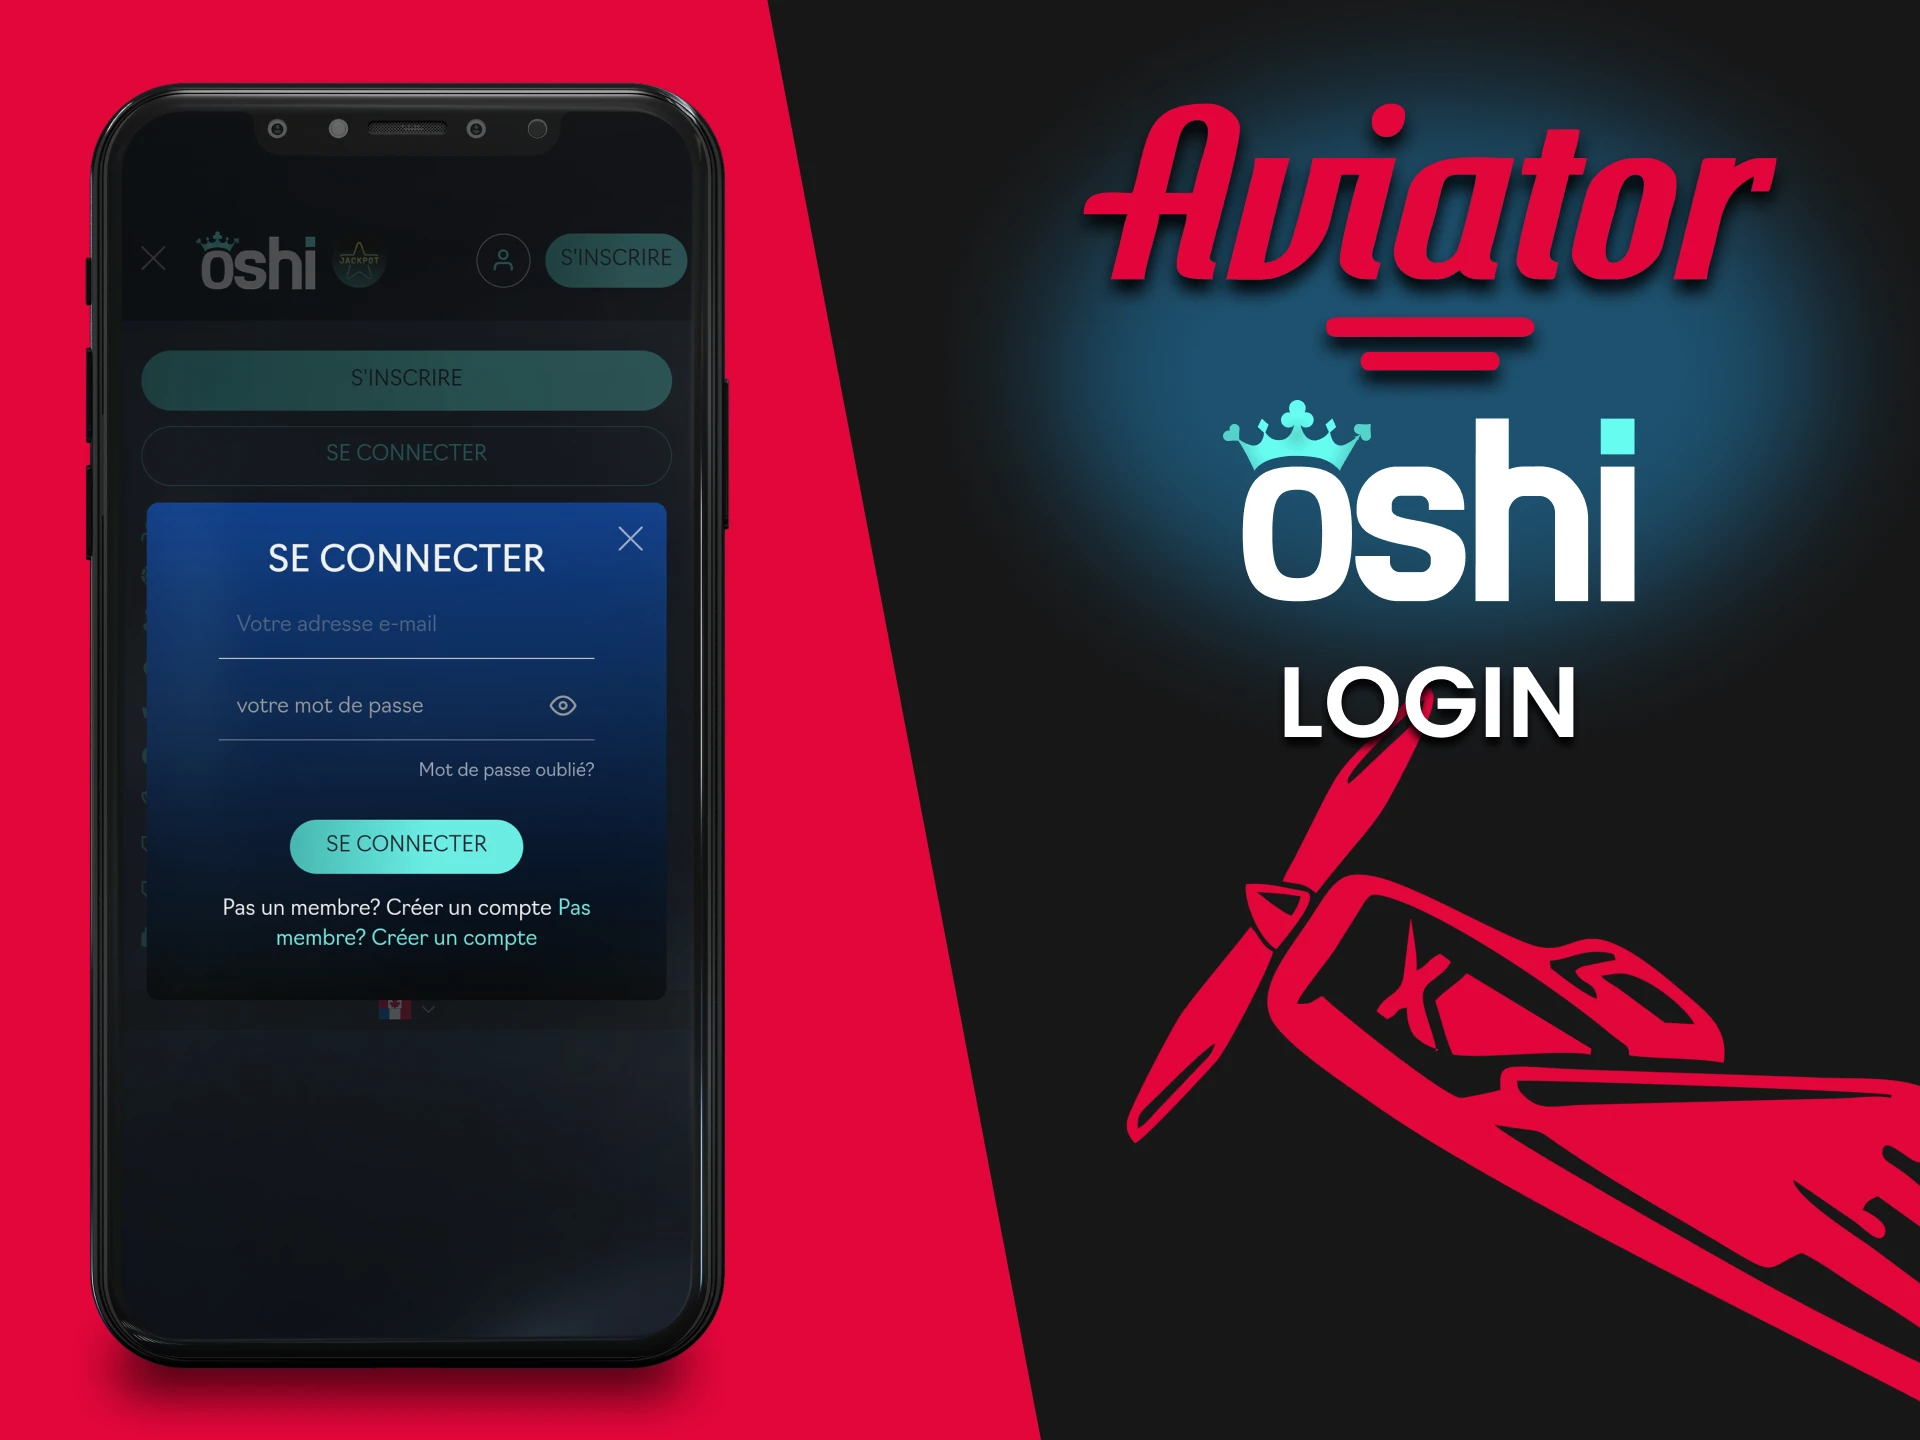 Connectez-vous à votre compte d'application OHi Casino et commencez à jouer à Aviator.